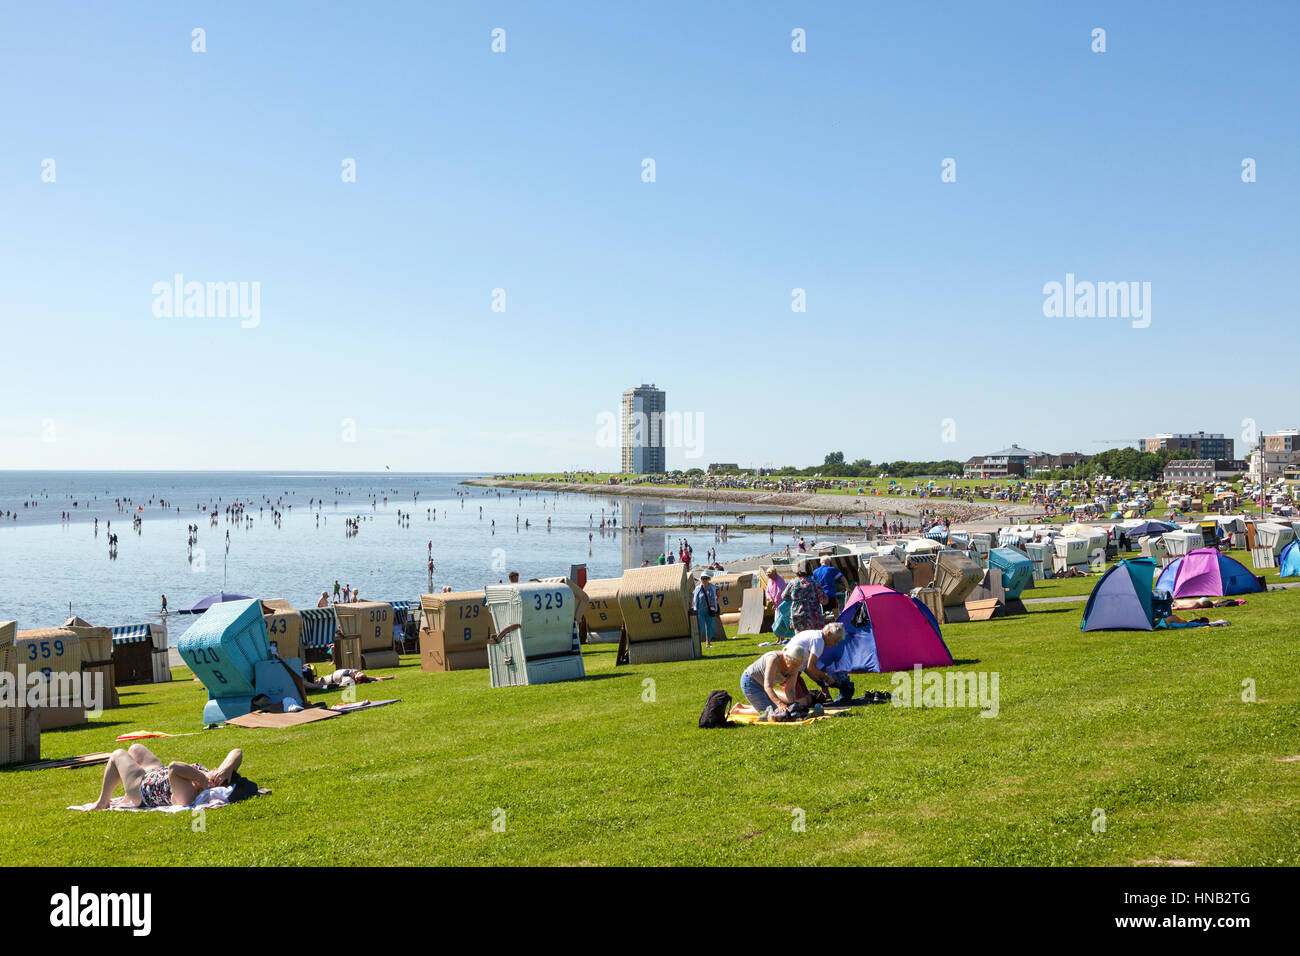 Büsum, Allemagne - 20 juillet 2016 : les personnes bénéficiant d'une chaude journée d'été à la plage bondée de Buesum. Banque D'Images